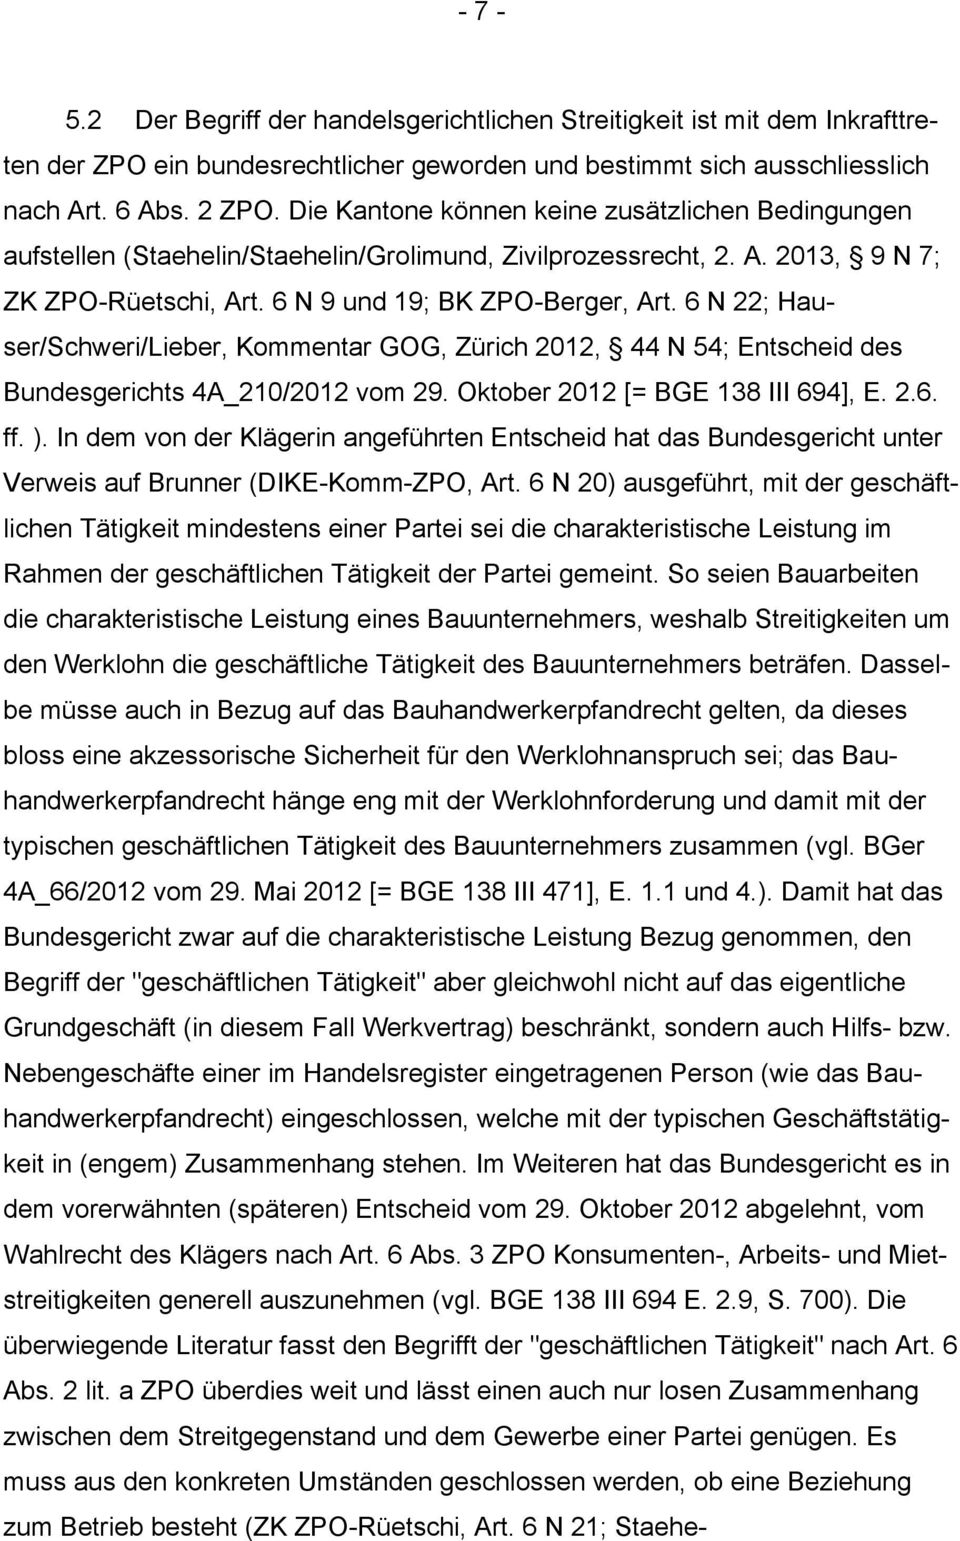 6 N 22; Hauser/Schweri/Lieber, Kommentar GOG, Zürich 2012, 44 N 54; Entscheid des Bundesgerichts 4A_210/2012 vom 29. Oktober 2012 [= BGE 138 III 694], E. 2.6. ff. ).